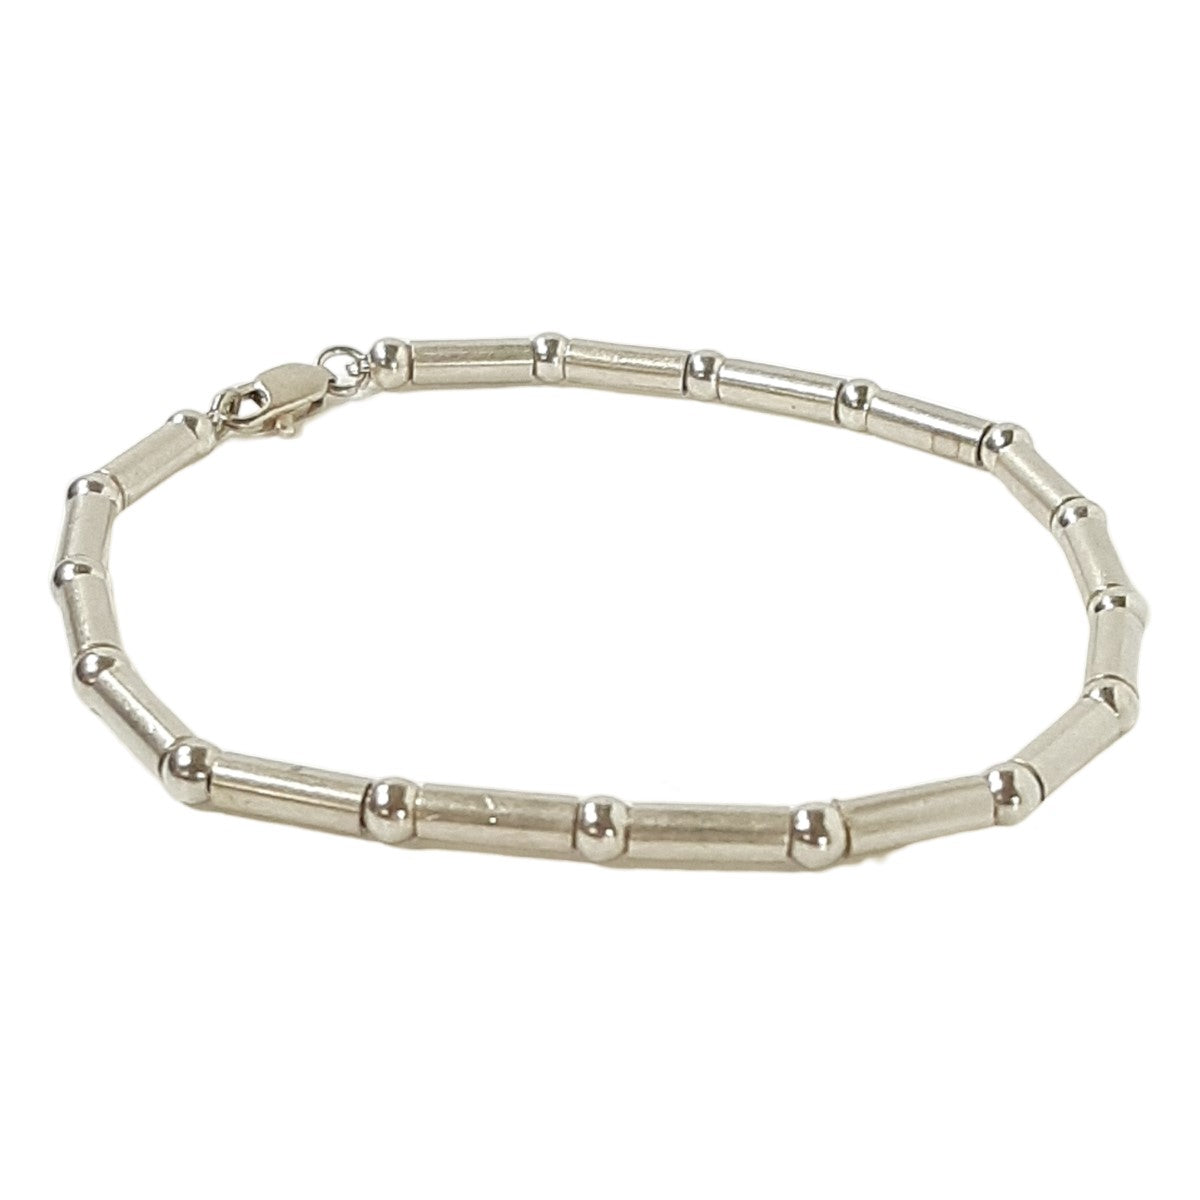 ヴィンテージ シルバー925 シルバービーズ バレル ブレスレット 10.5g / Vintage Sterling Silver Beads Barrel Bracelet